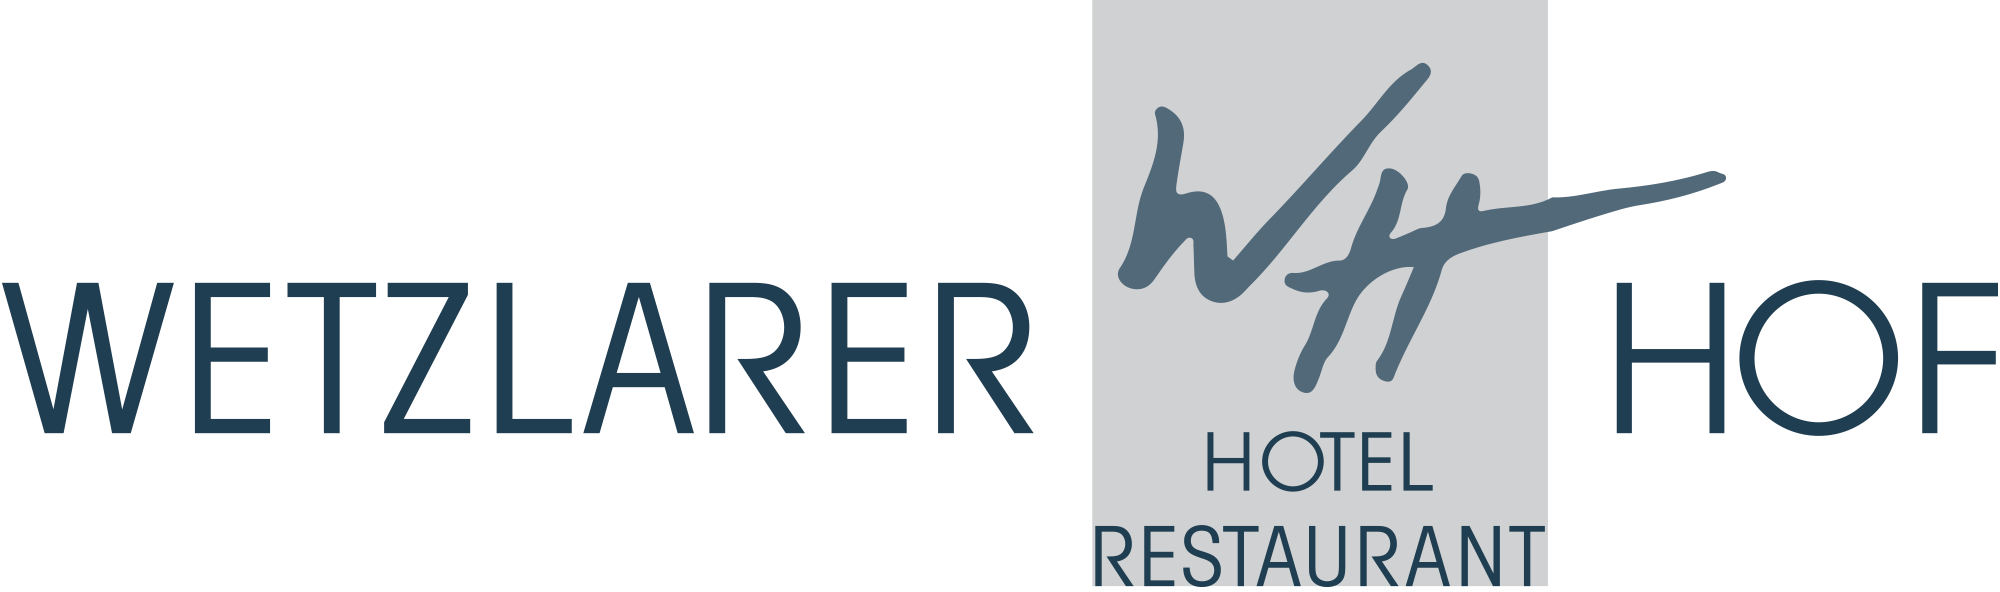 Hotel Restaurant Wetzlarer Hof